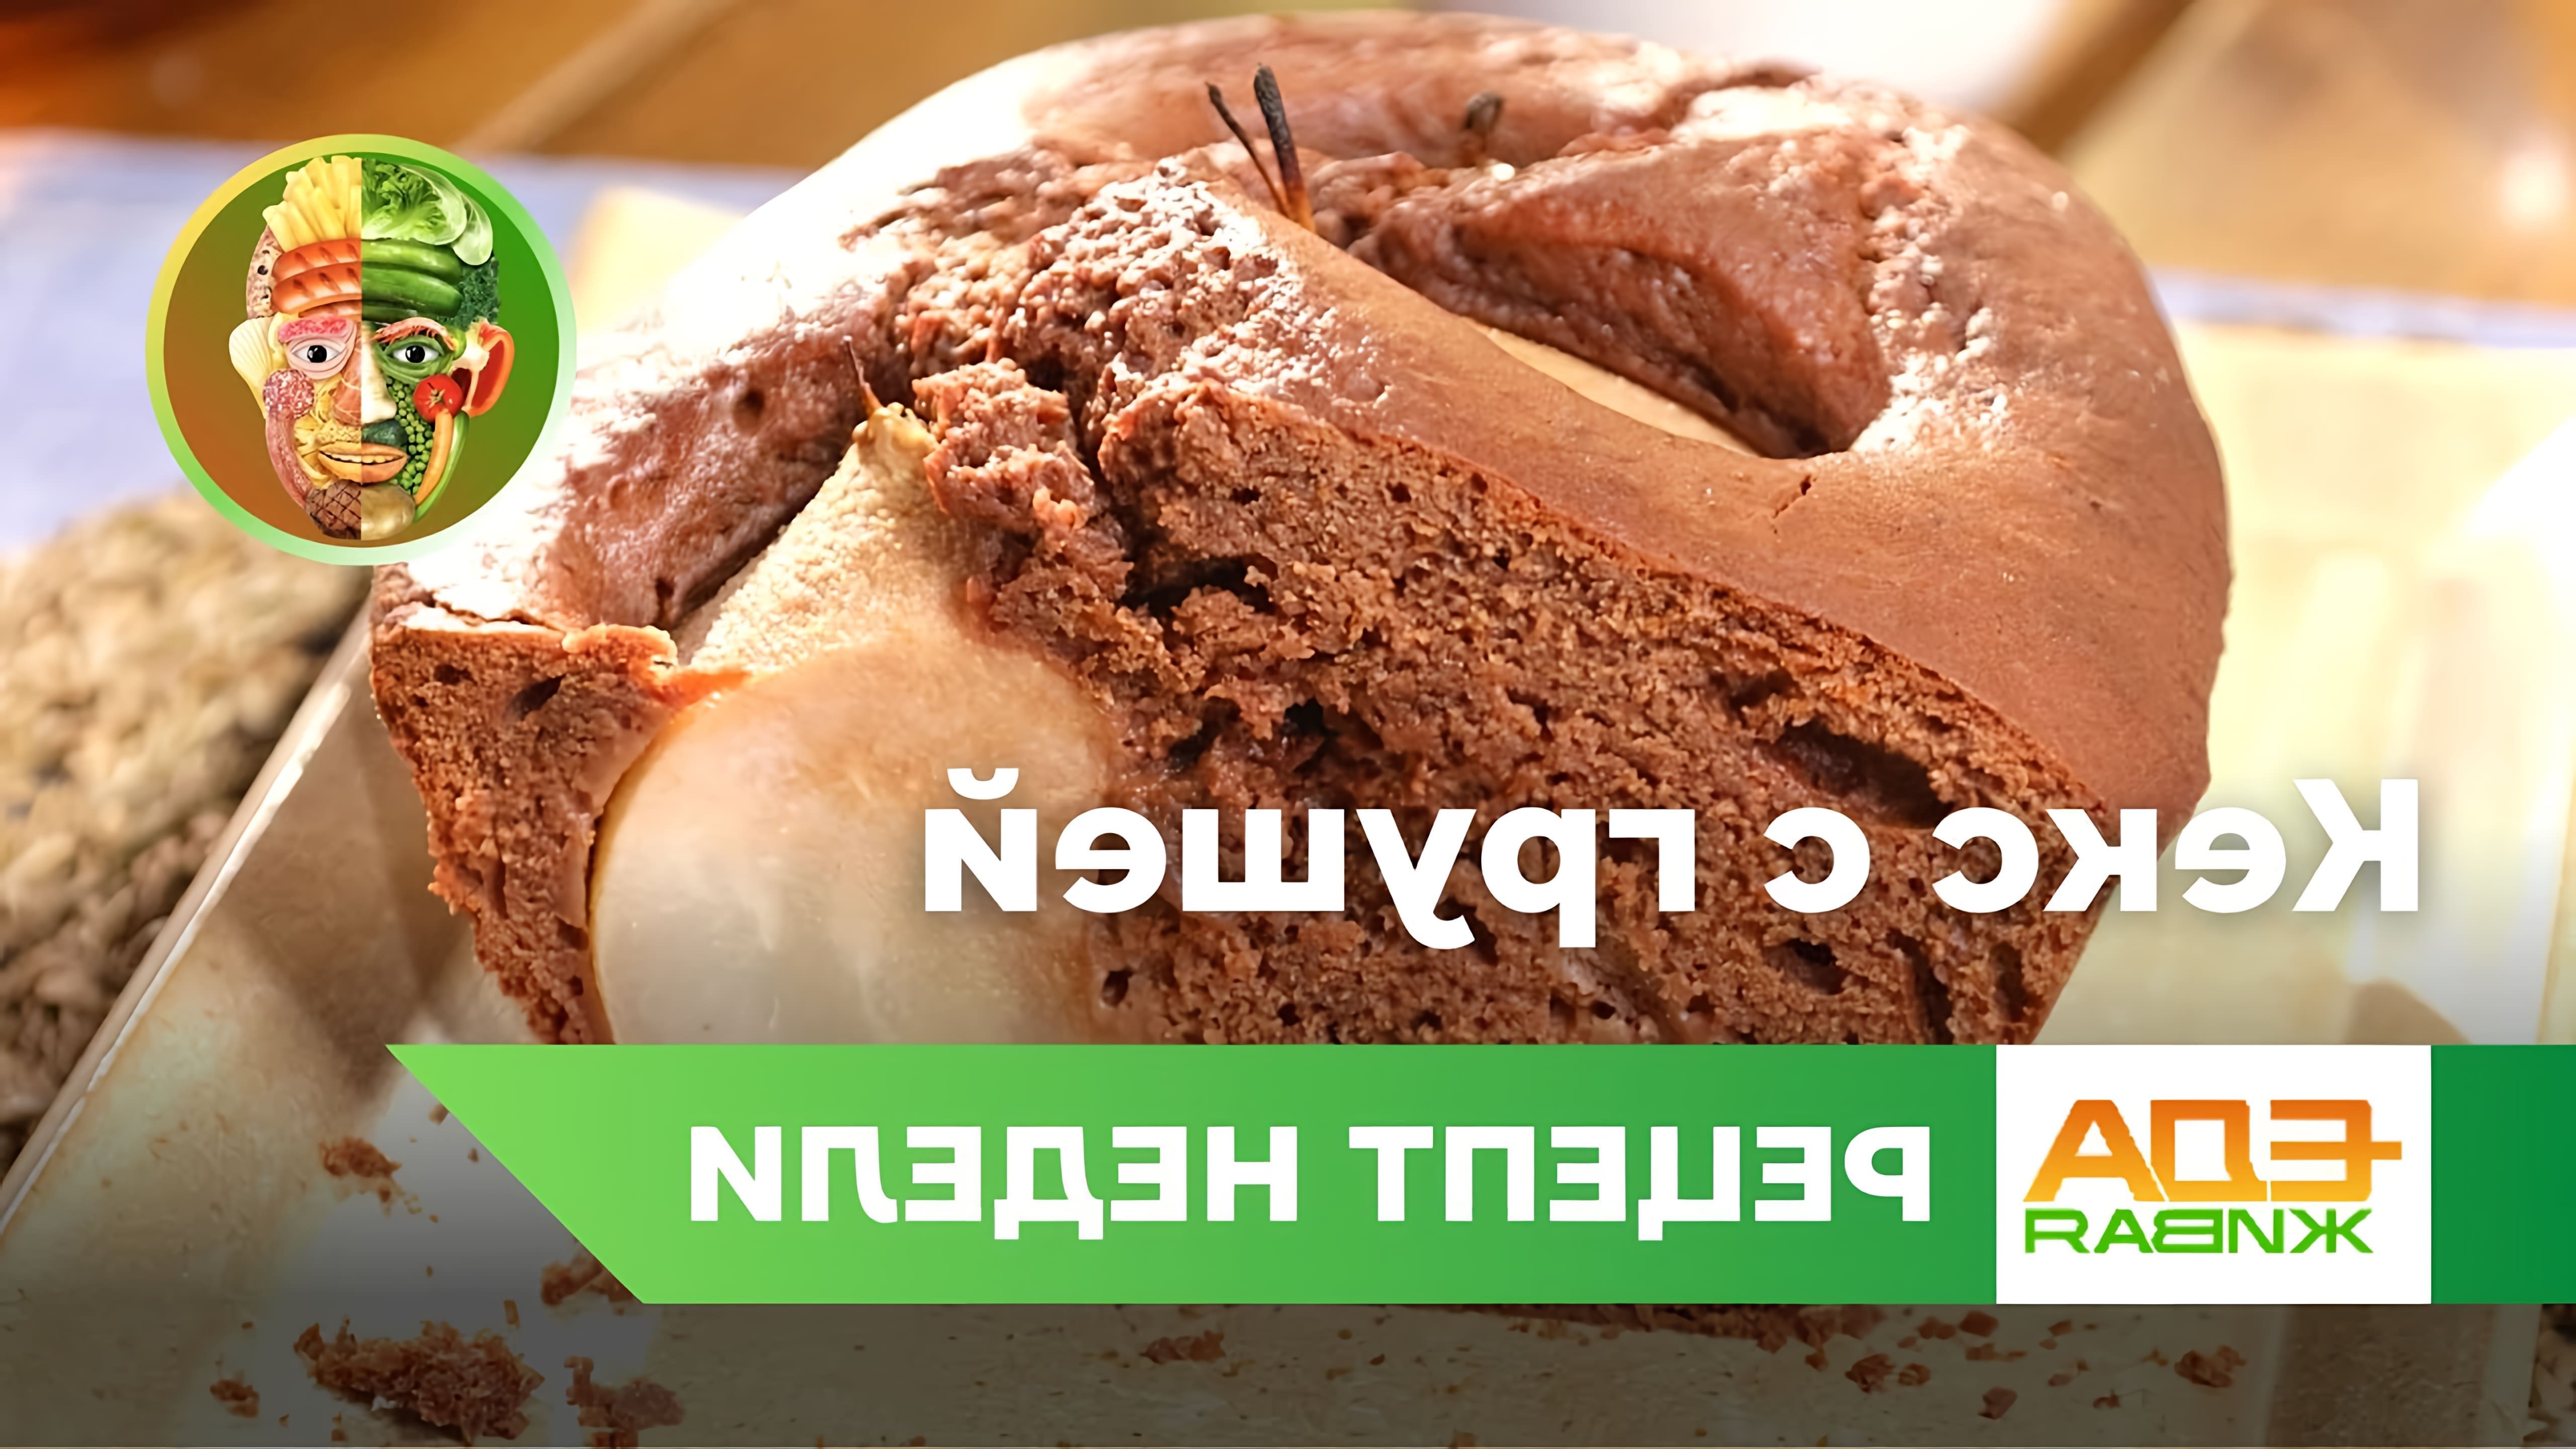 В этом видео демонстрируется рецепт шоколадного кекса с грушами